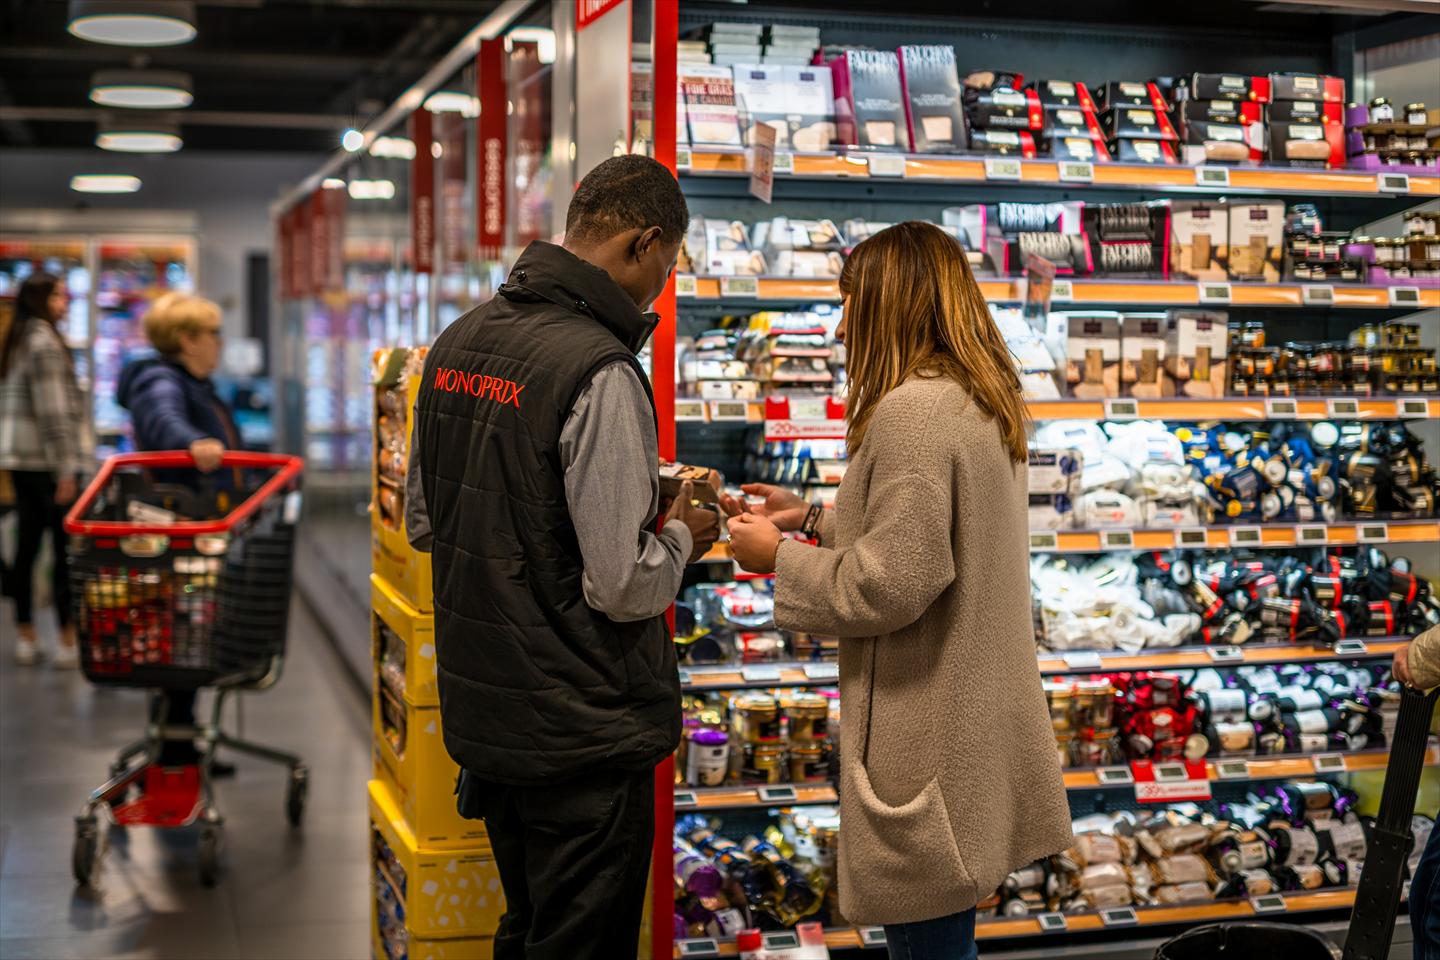 La chaîne de supermarchés française Monoprix embauche des préposés aux supermarchés à travers le pays